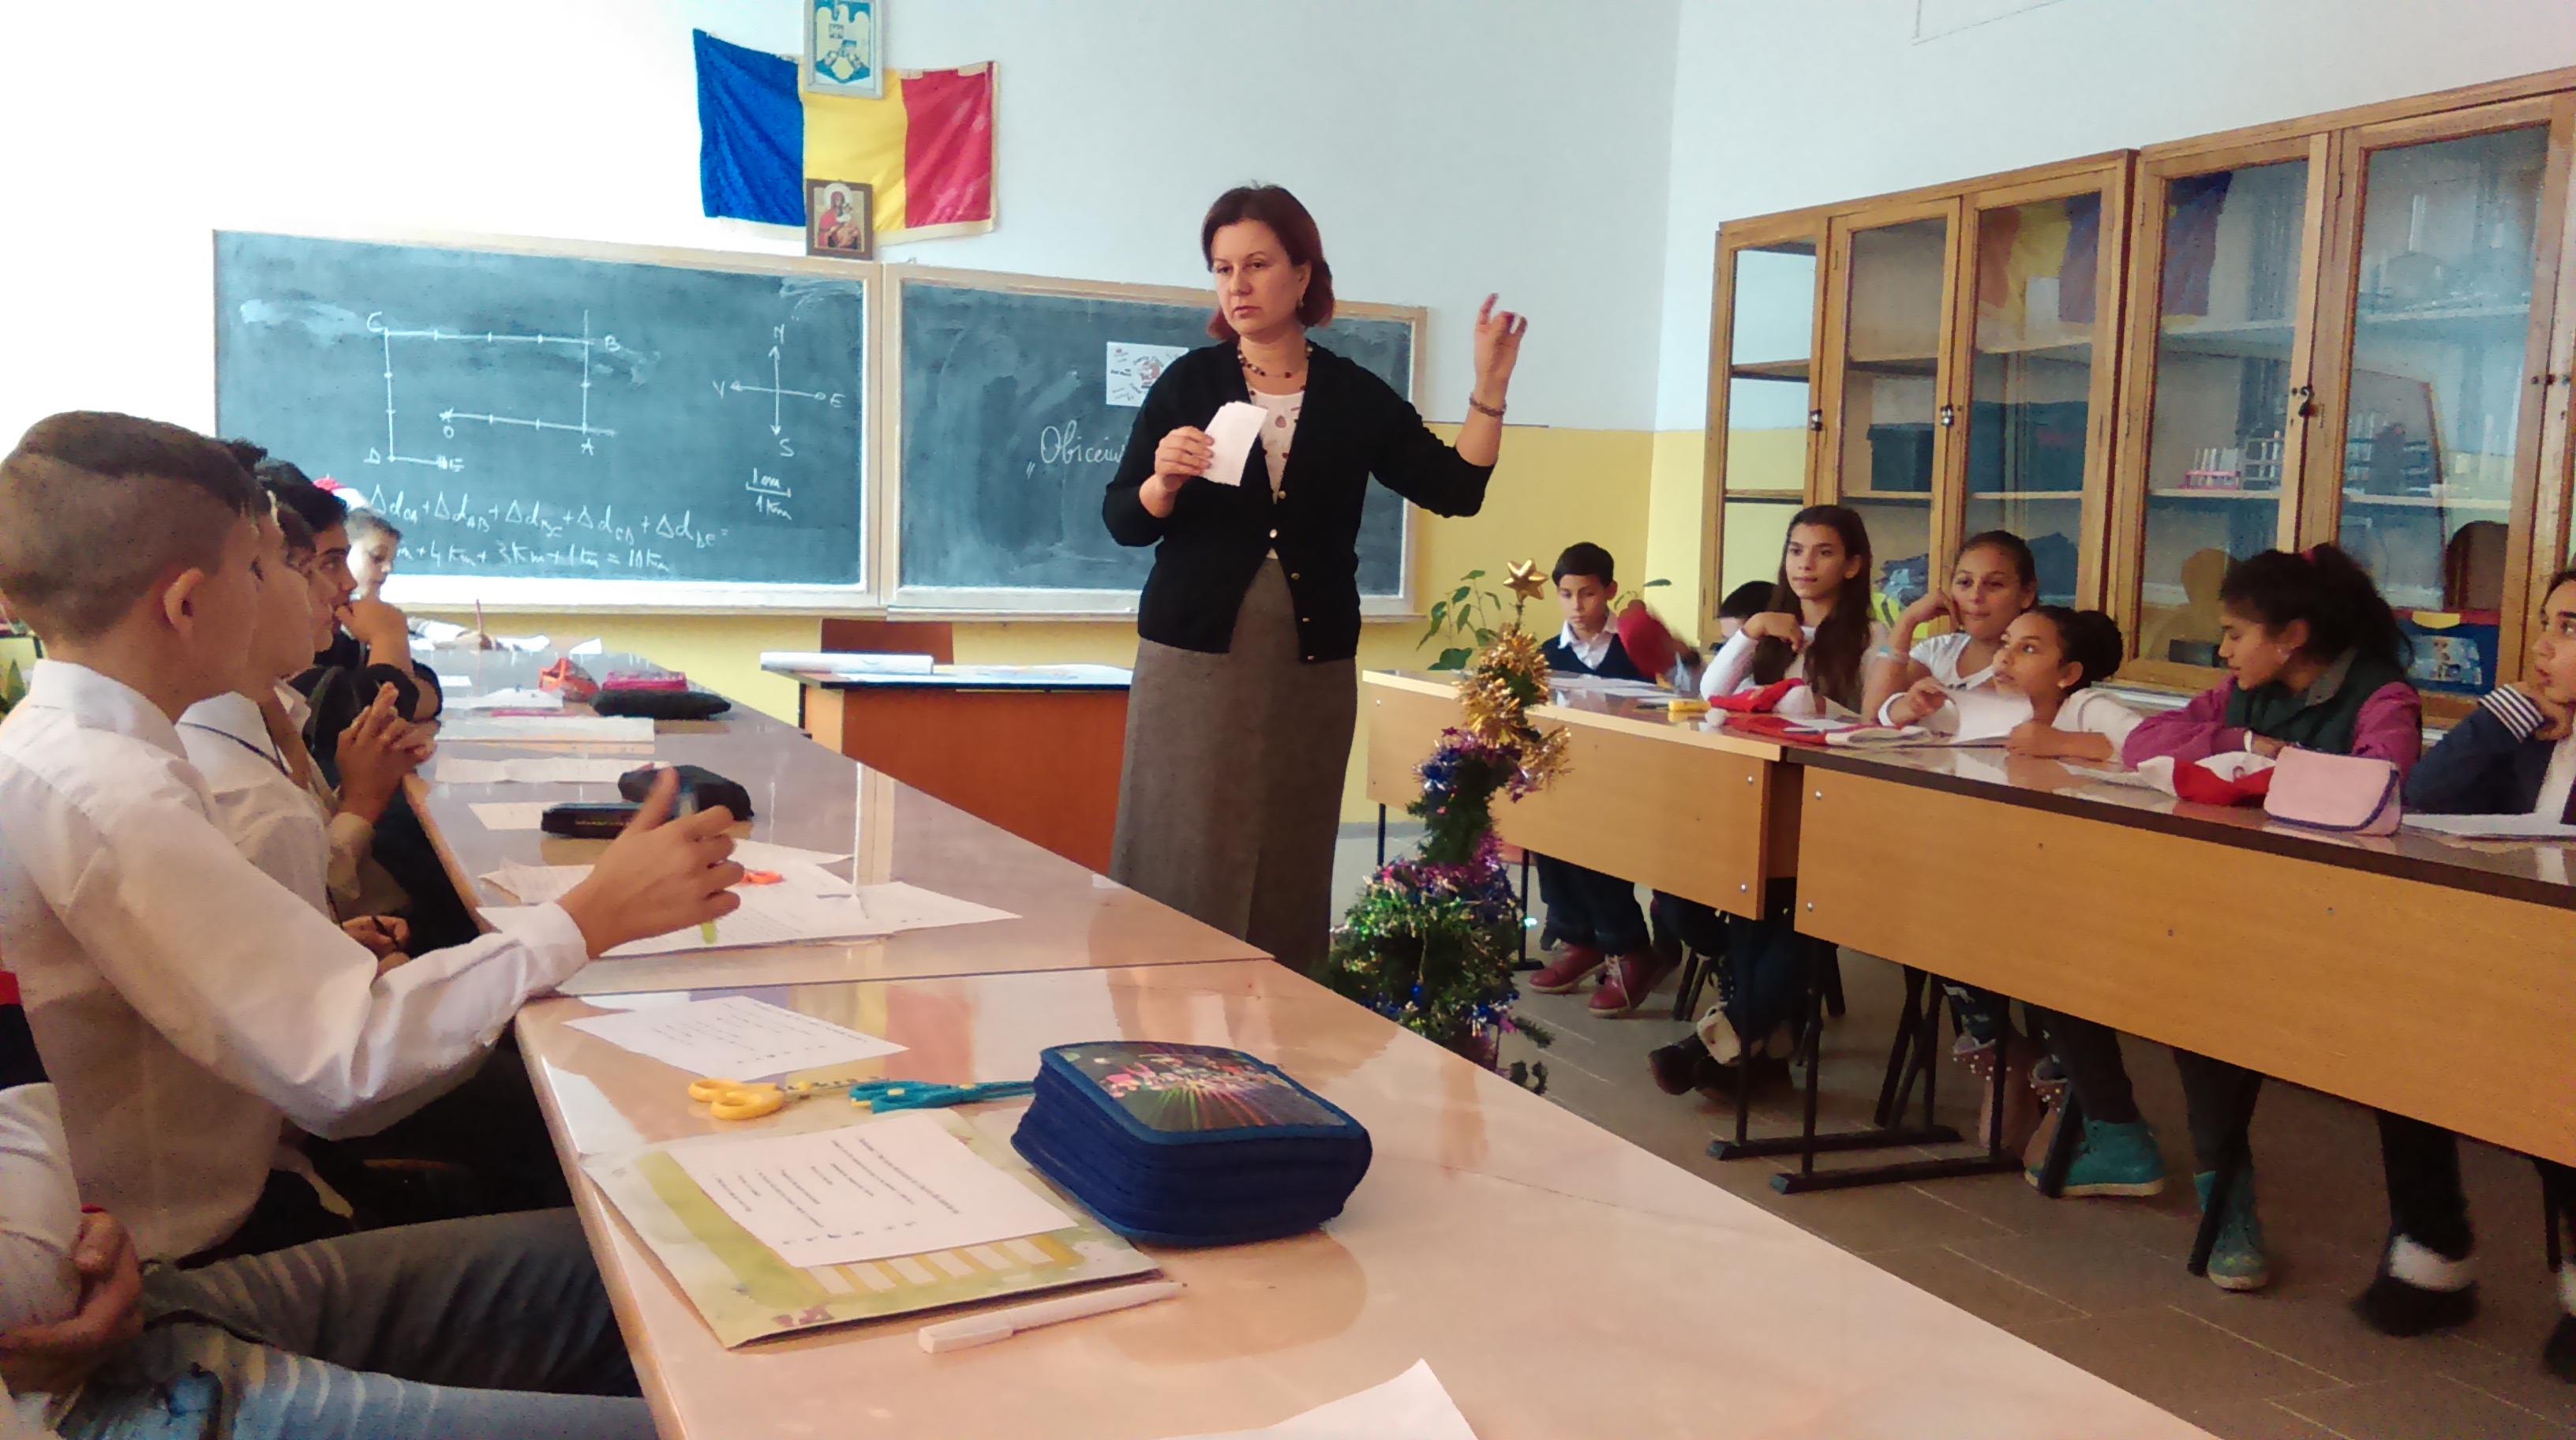 Decembrie 2014 școala Gimnazială Anton Pann Ploiești